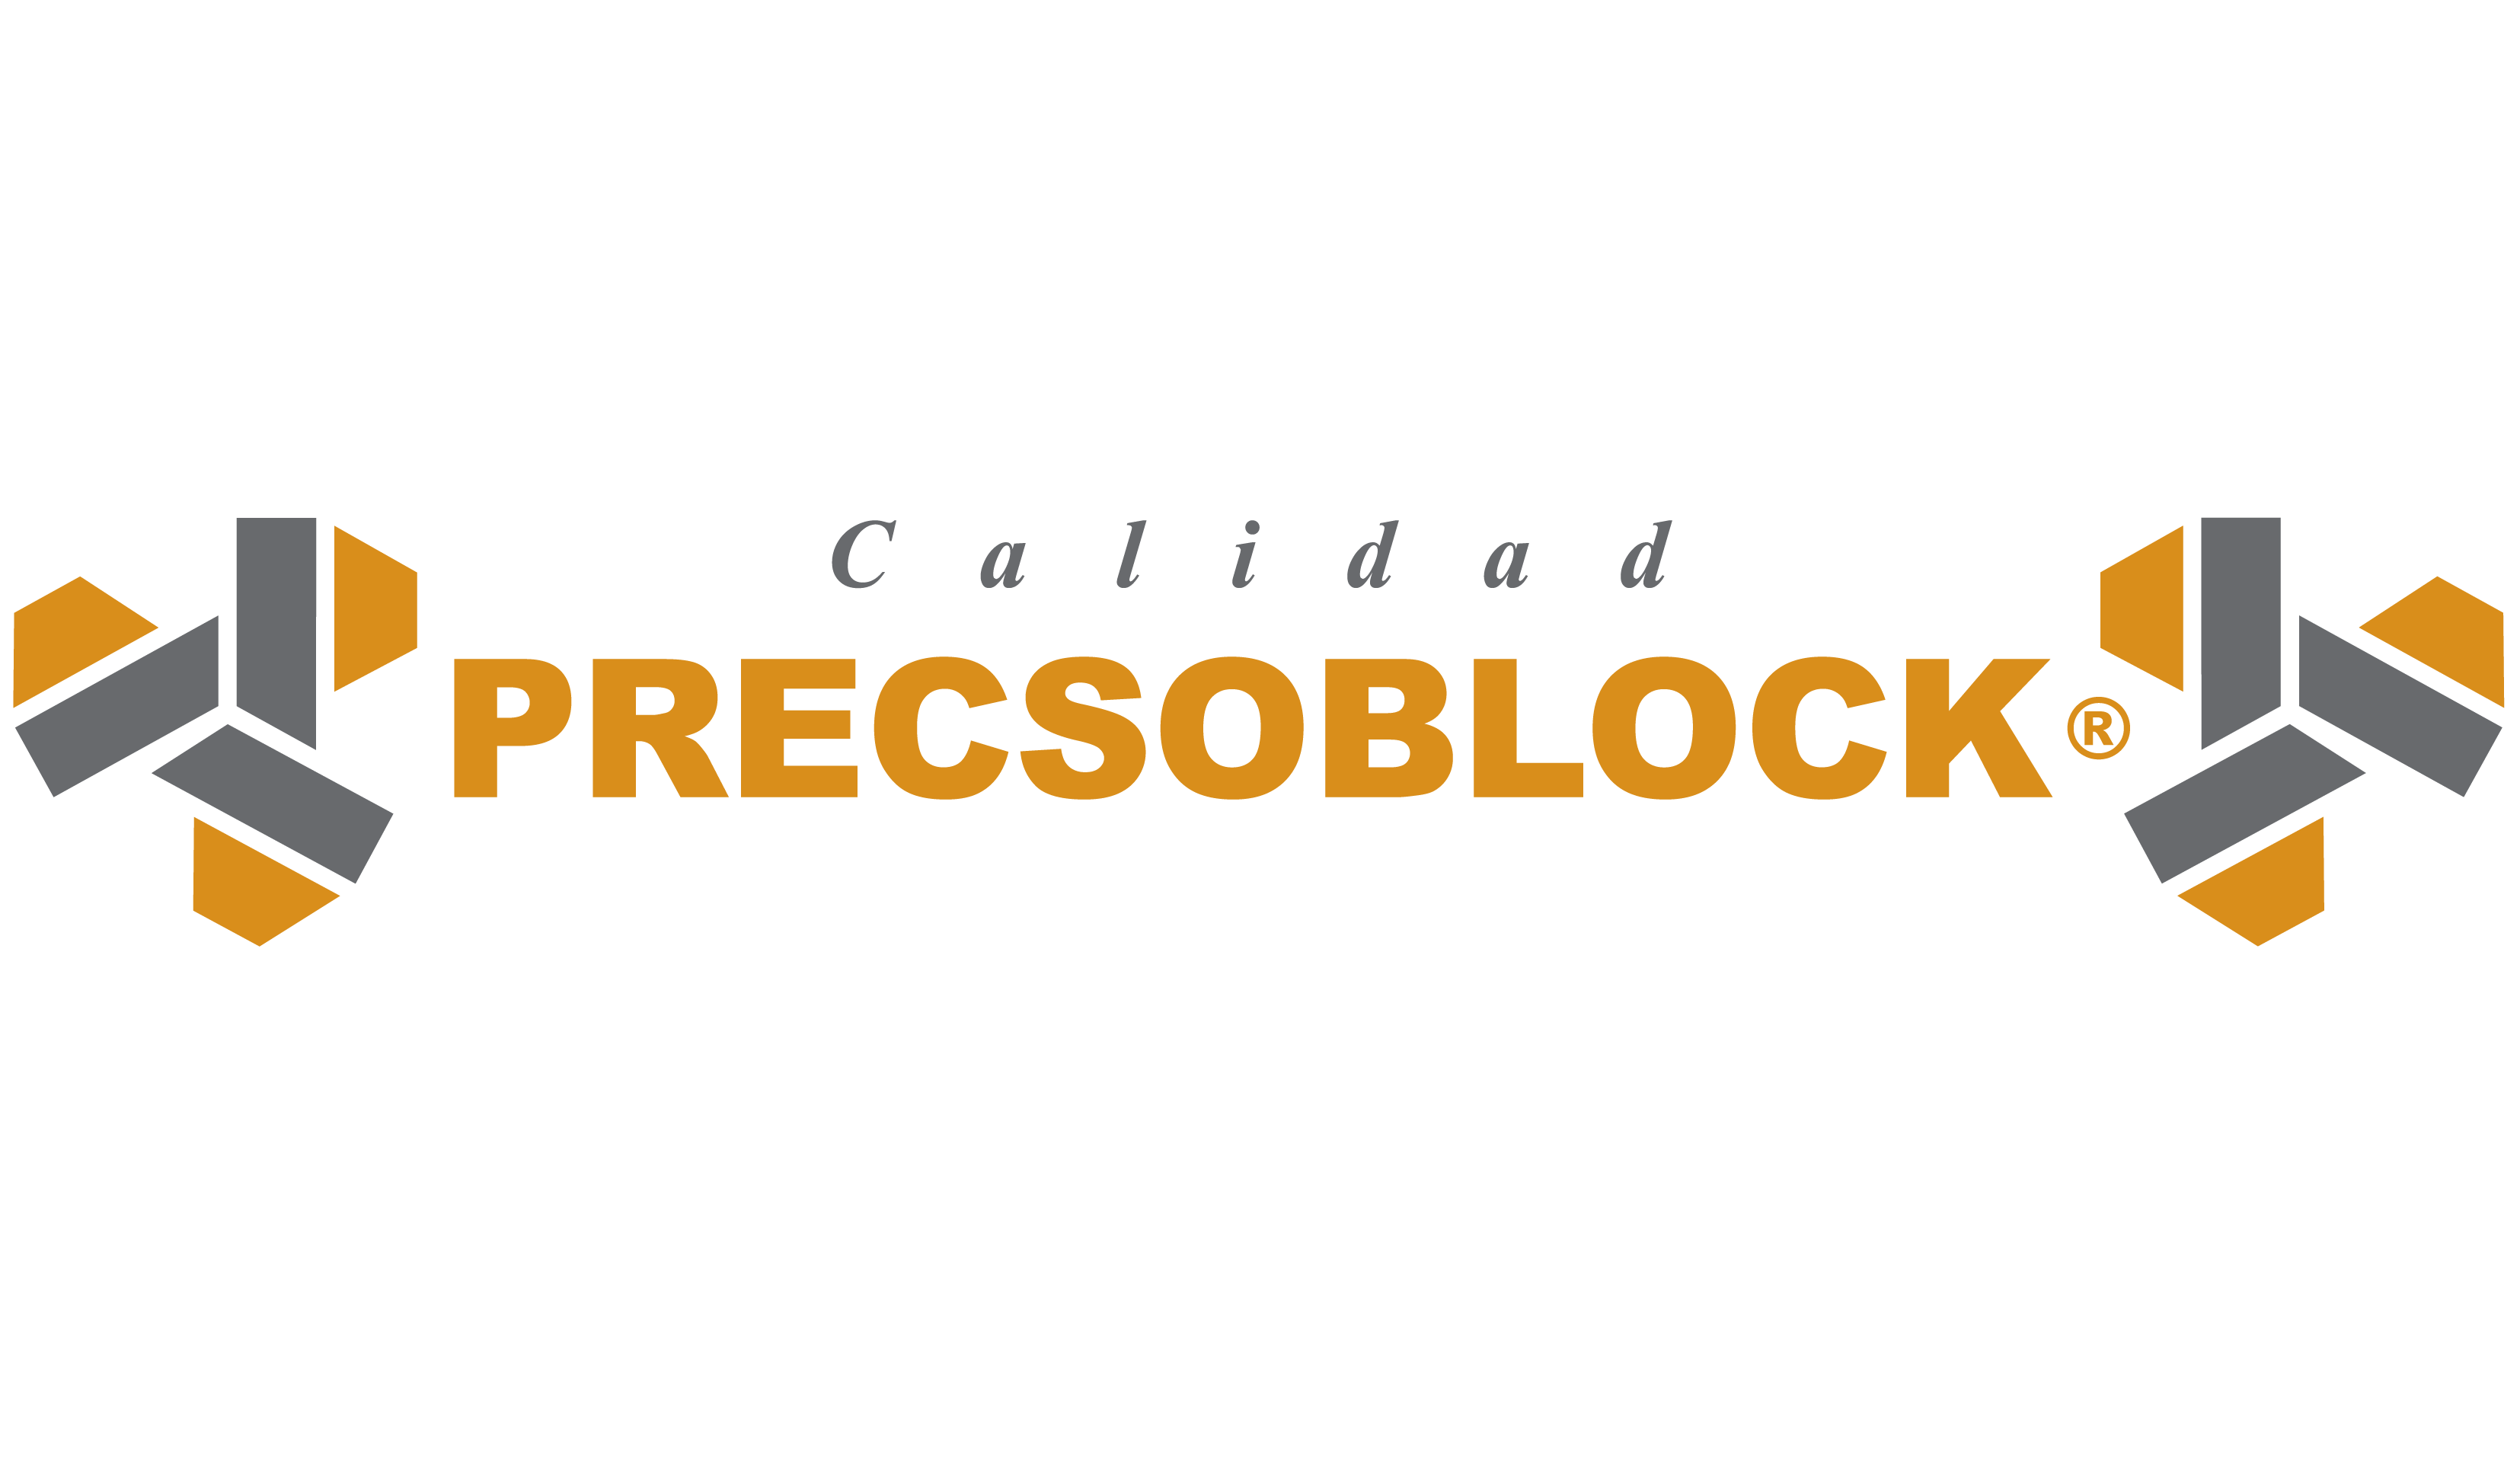 Precsoblock